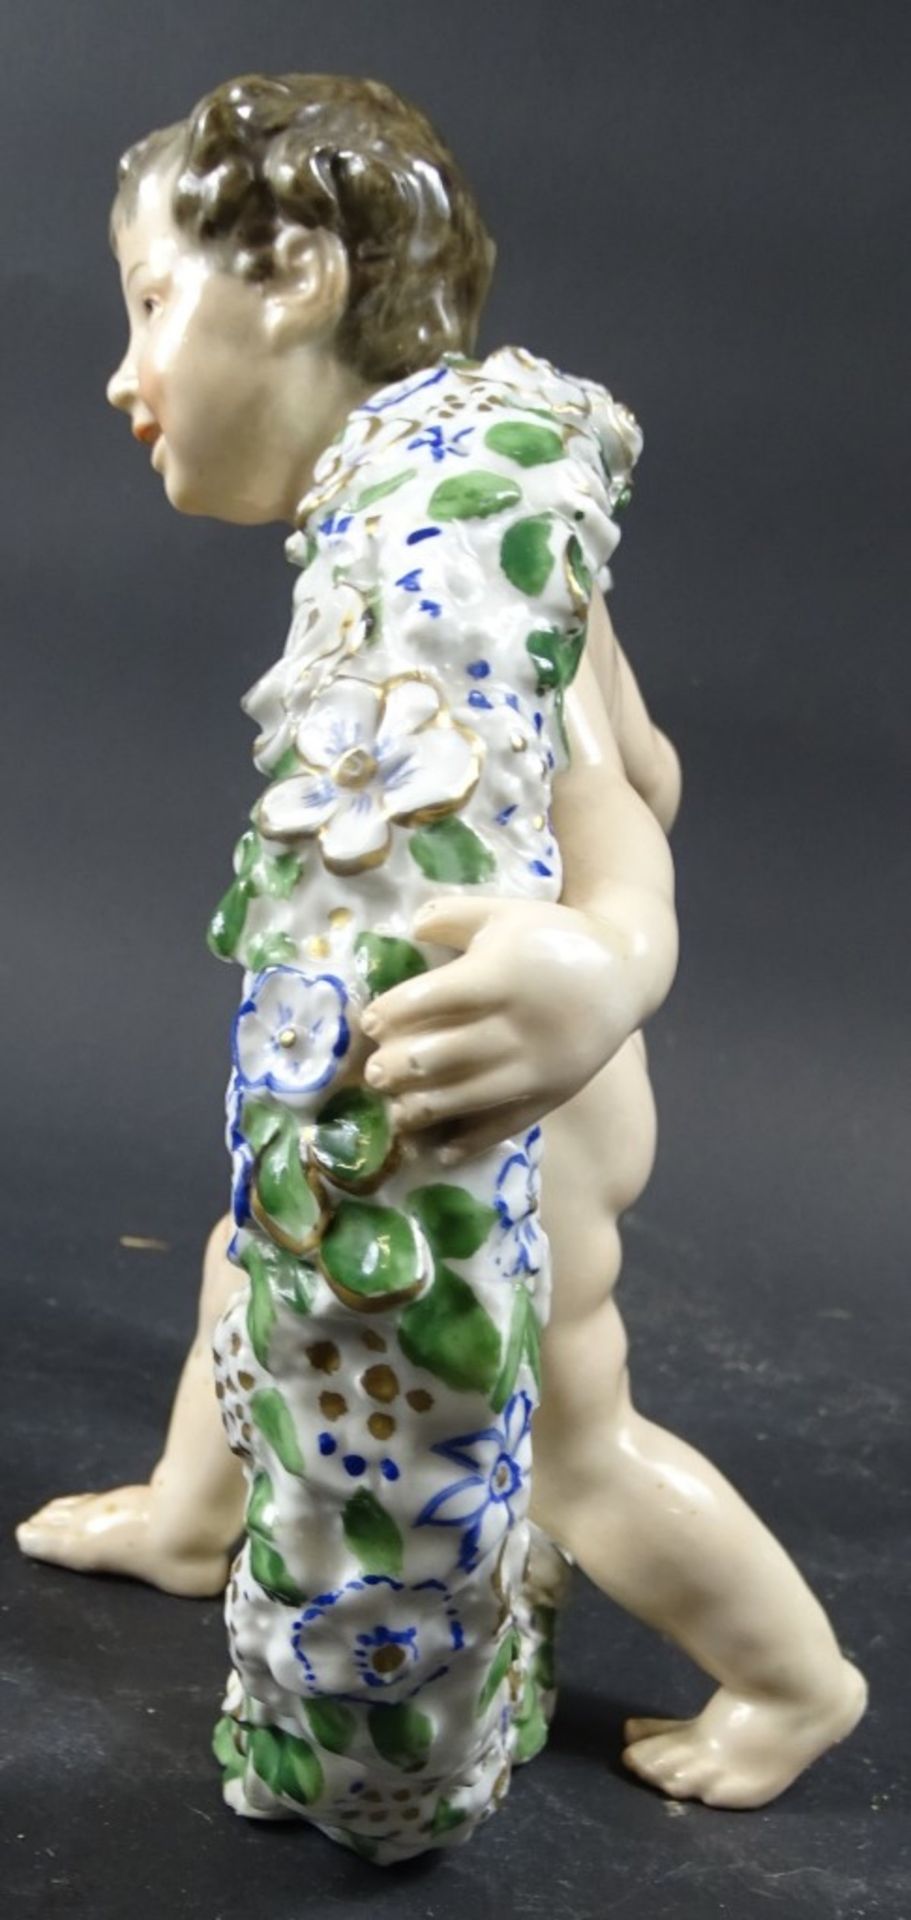 Porzellanfigur, Knabe mit Blumenkranz, KVE-Marke, H. ca. 20,5 cm, Körper weist Flecken auf - Bild 2 aus 7